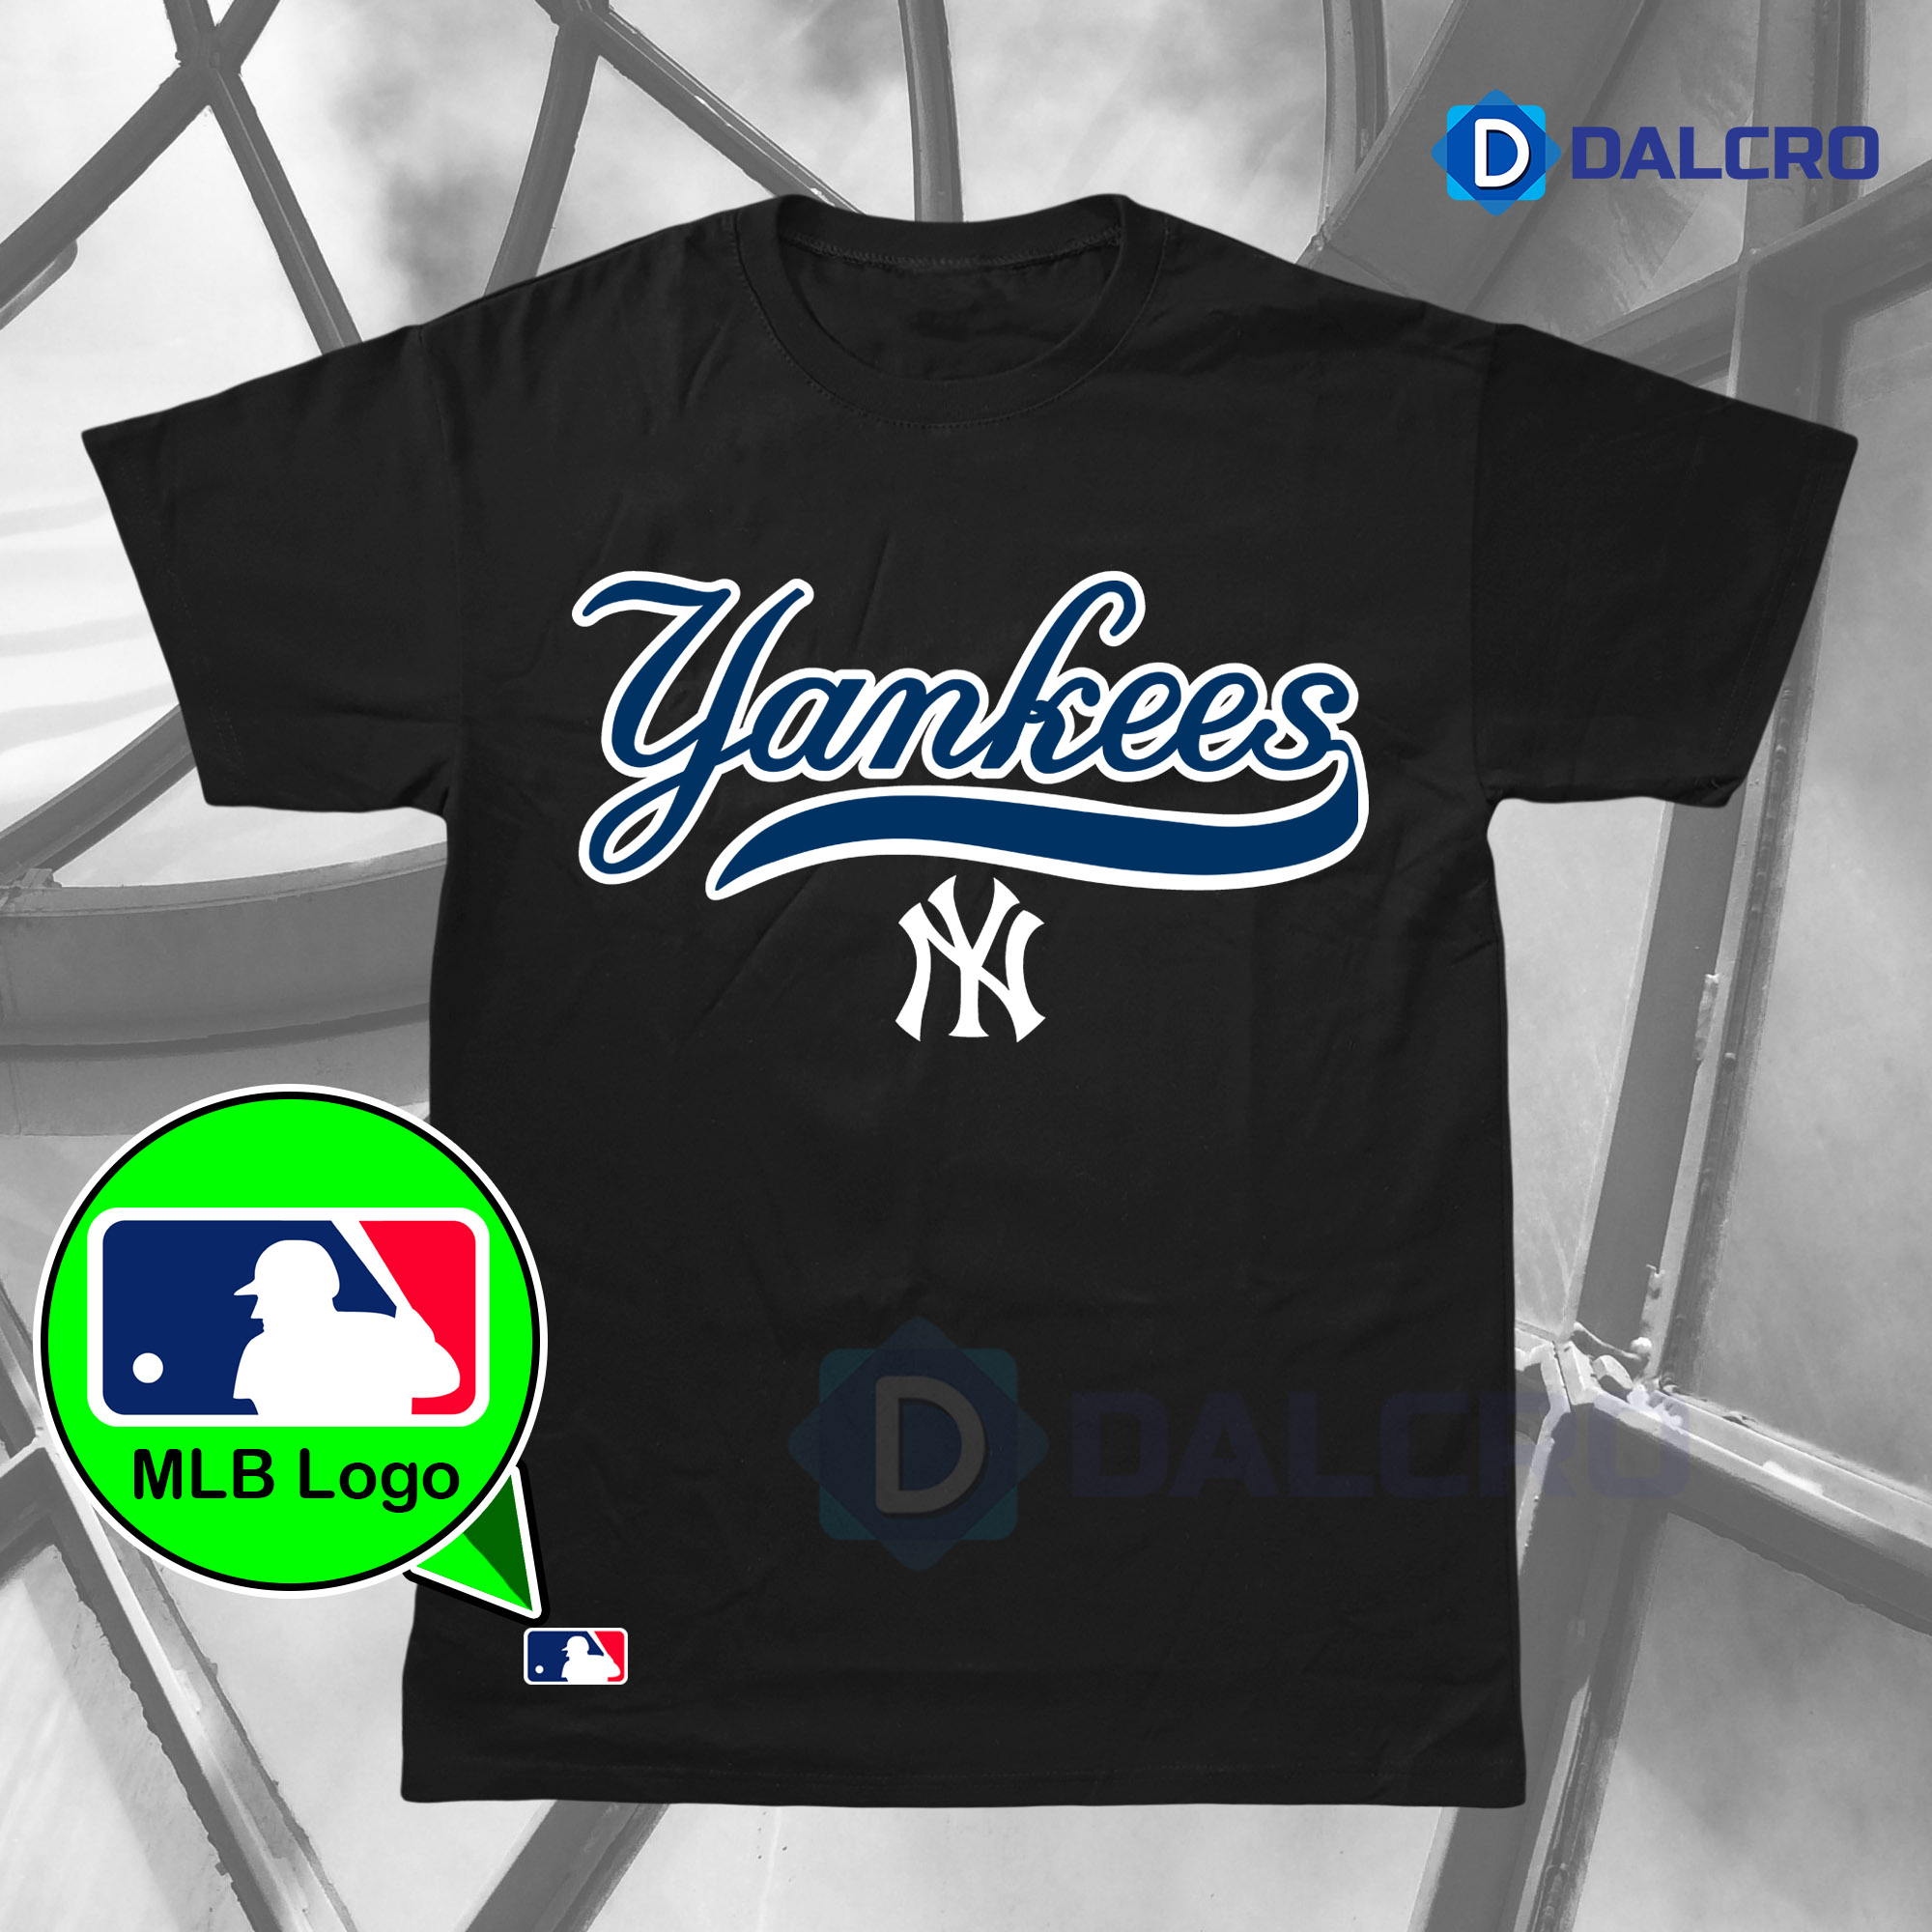 Áo Phông MLB New York Yankees Cash Cow Short Sleeve Tshirt Đen